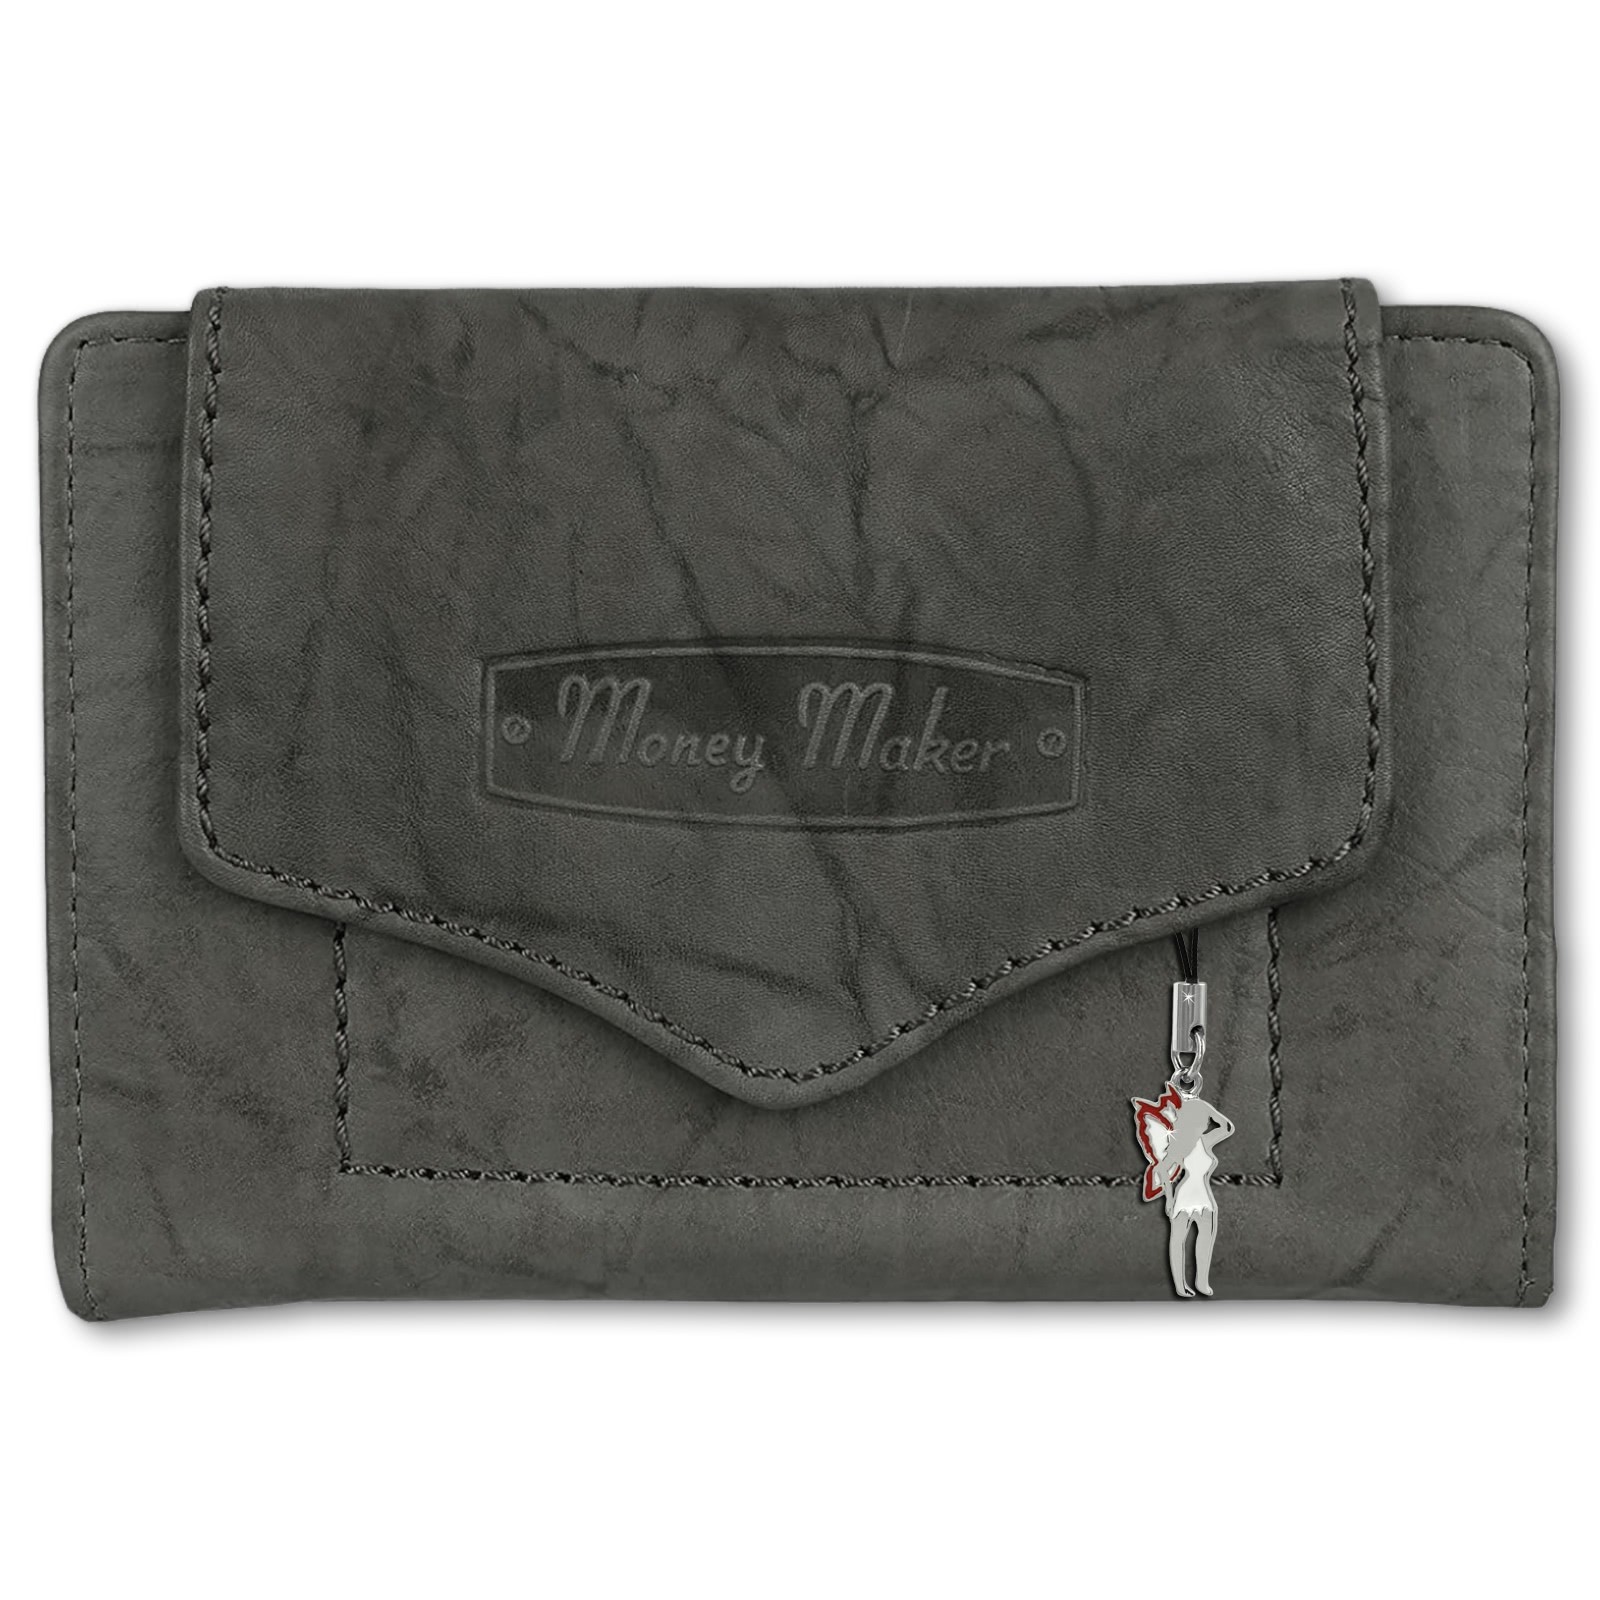 Money Maker Geldbörse Leder grau Brieftasche Portemonnaie RFID Schutz OPJ700K